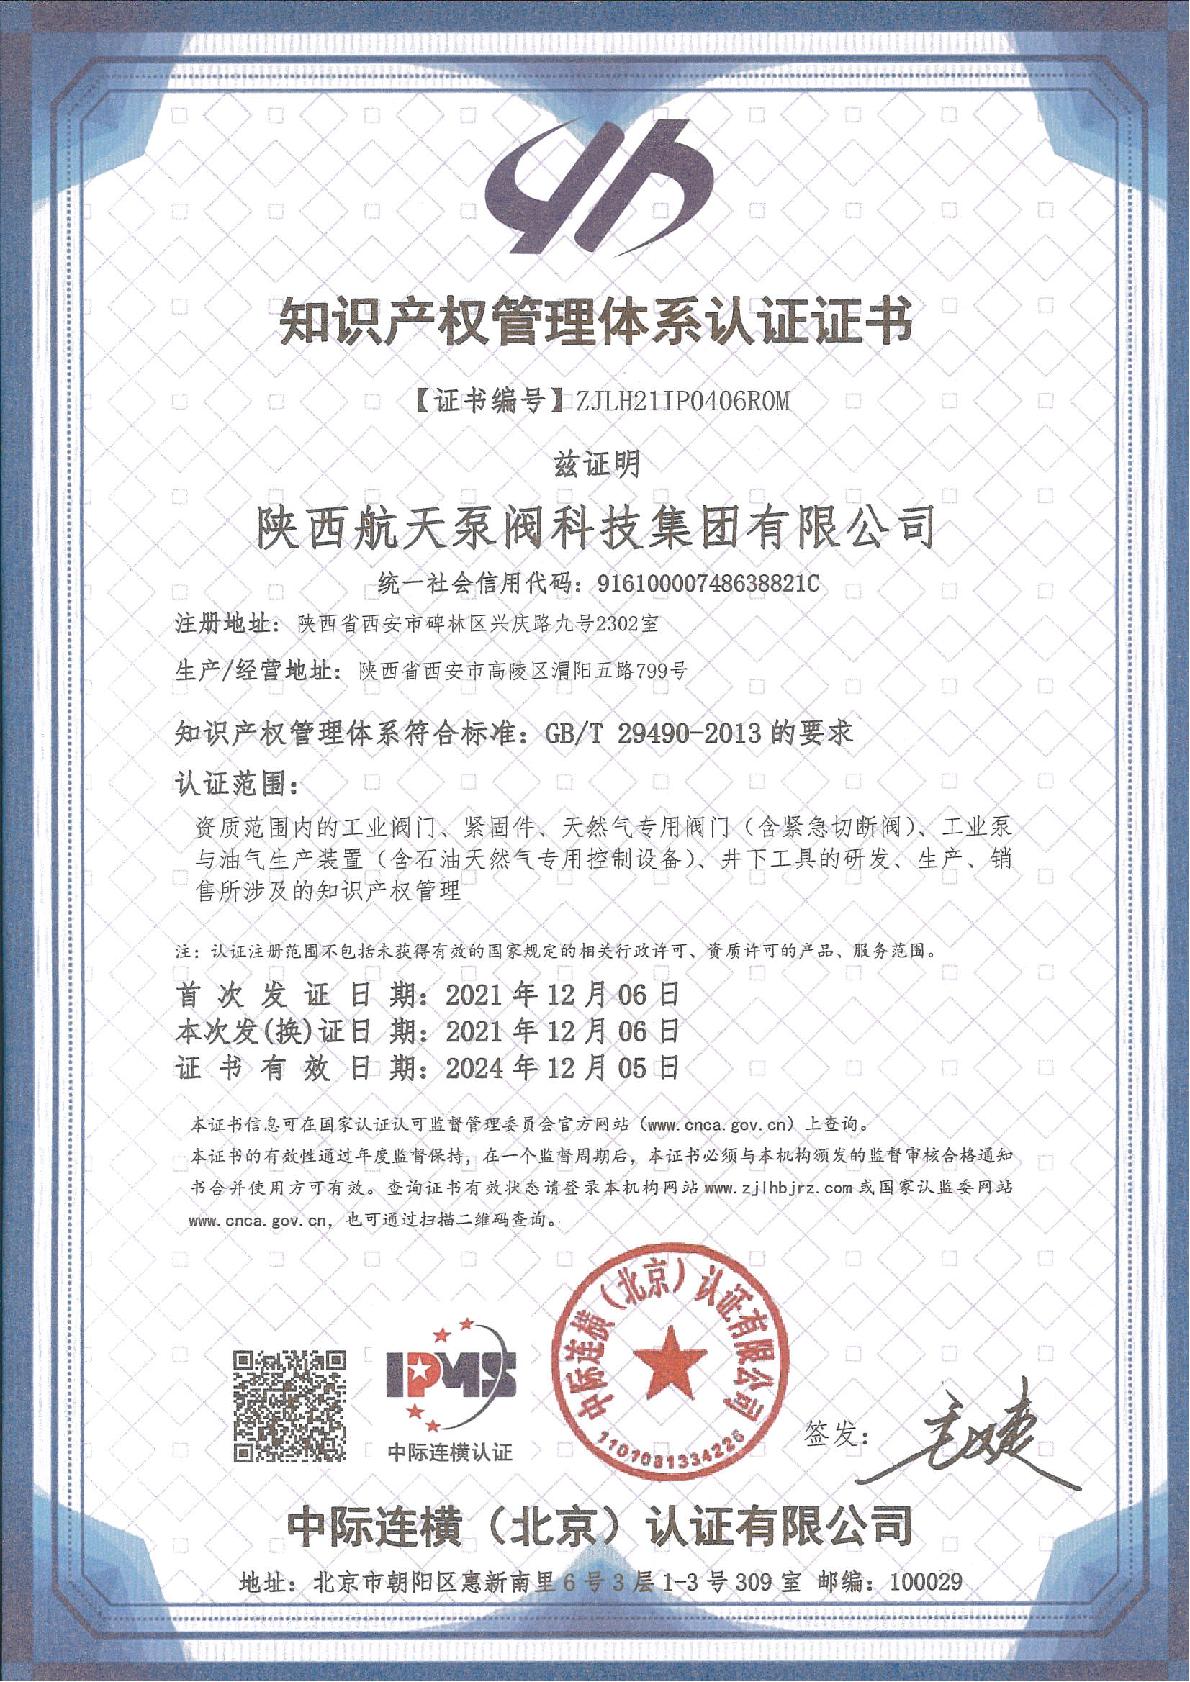 知识产权管理体系证书-IPMS证书中文